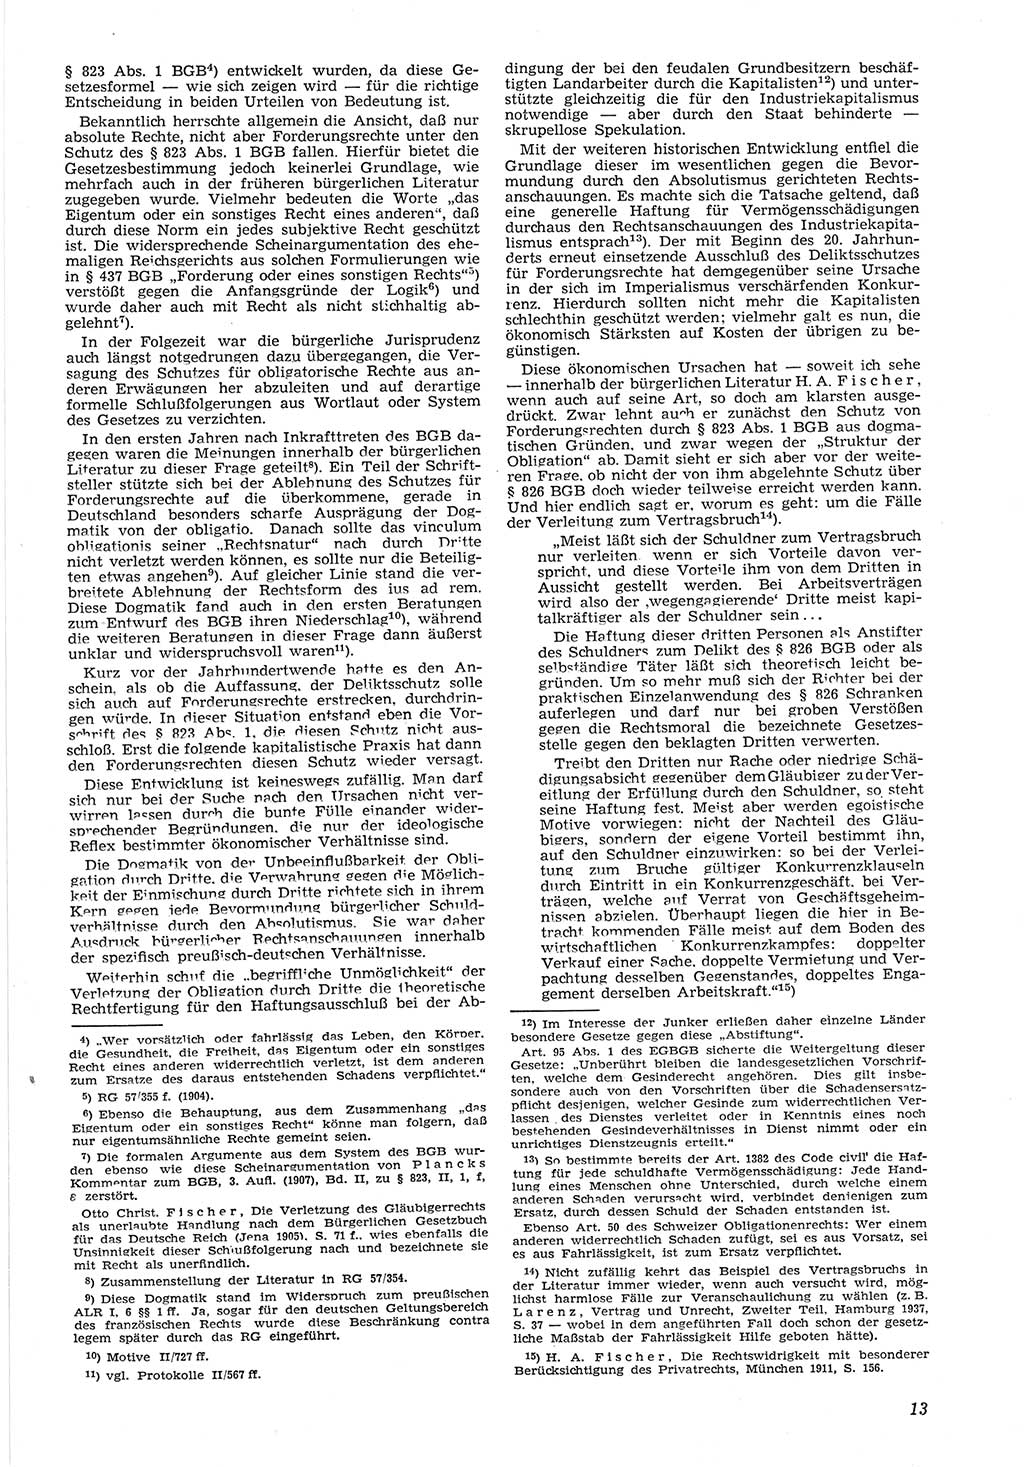 Neue Justiz (NJ), Zeitschrift für Recht und Rechtswissenschaft [Deutsche Demokratische Republik (DDR)], 8. Jahrgang 1954, Seite 13 (NJ DDR 1954, S. 13)